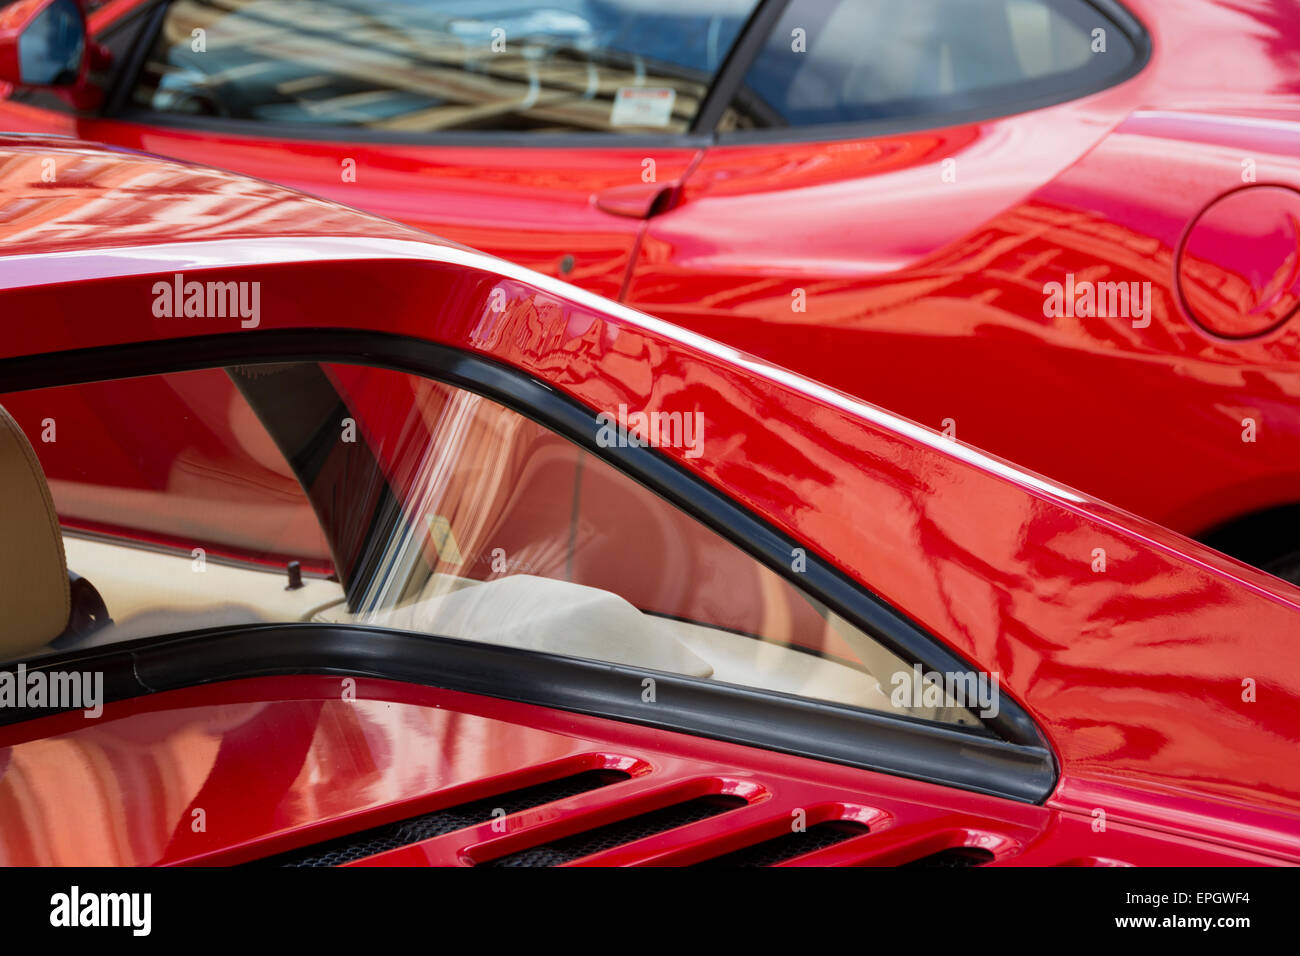 Detalle de dos rojos Ferrari en el Bristol Automoto italiana justo, mostrando sus propias curvas. Foto de stock